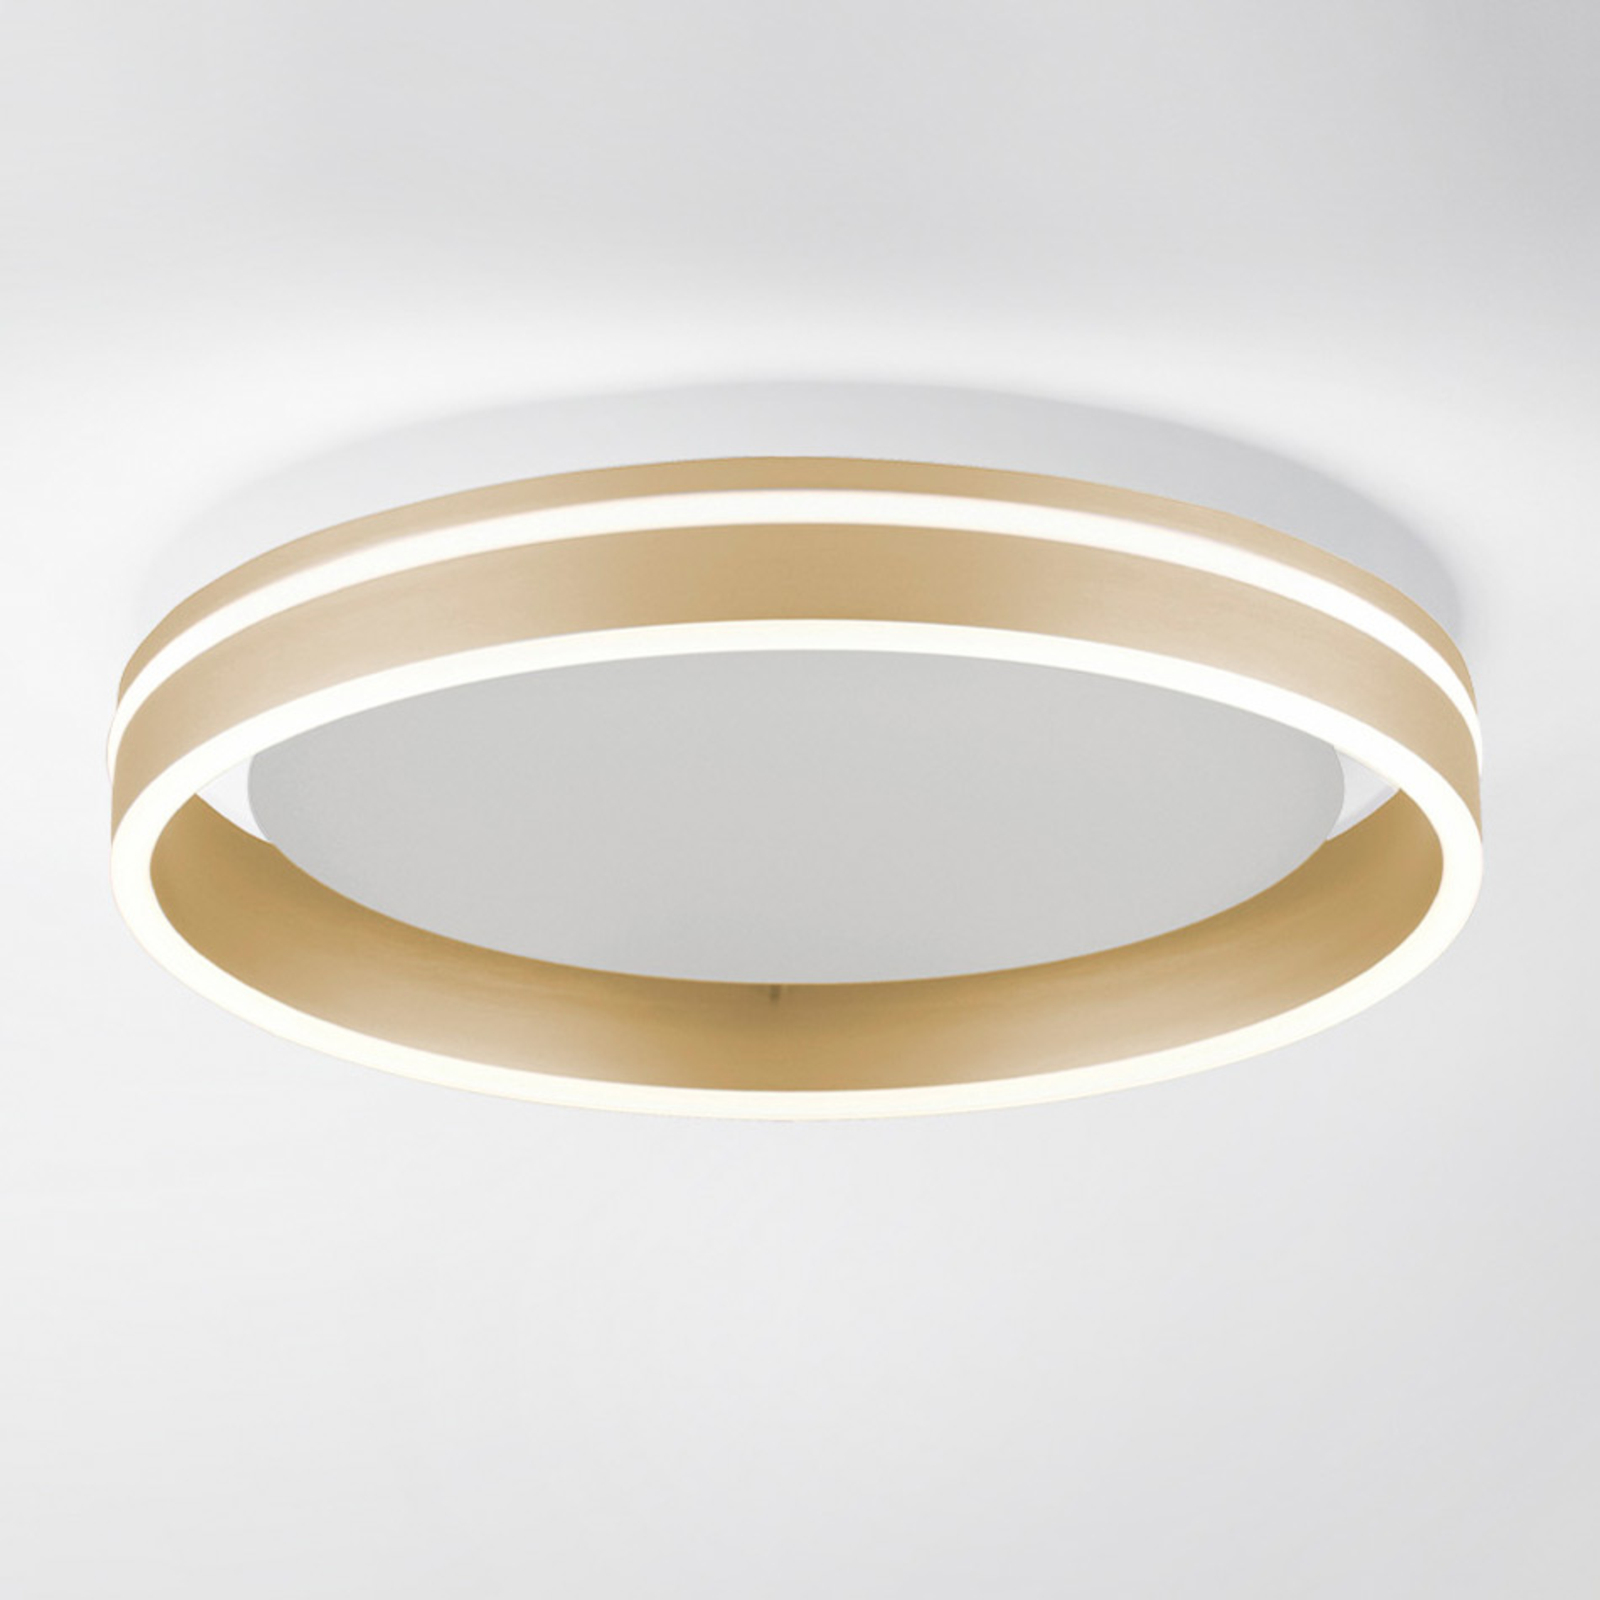 Paul Neuhaus Q-VITO LED stropní světlo, Ø 40cm